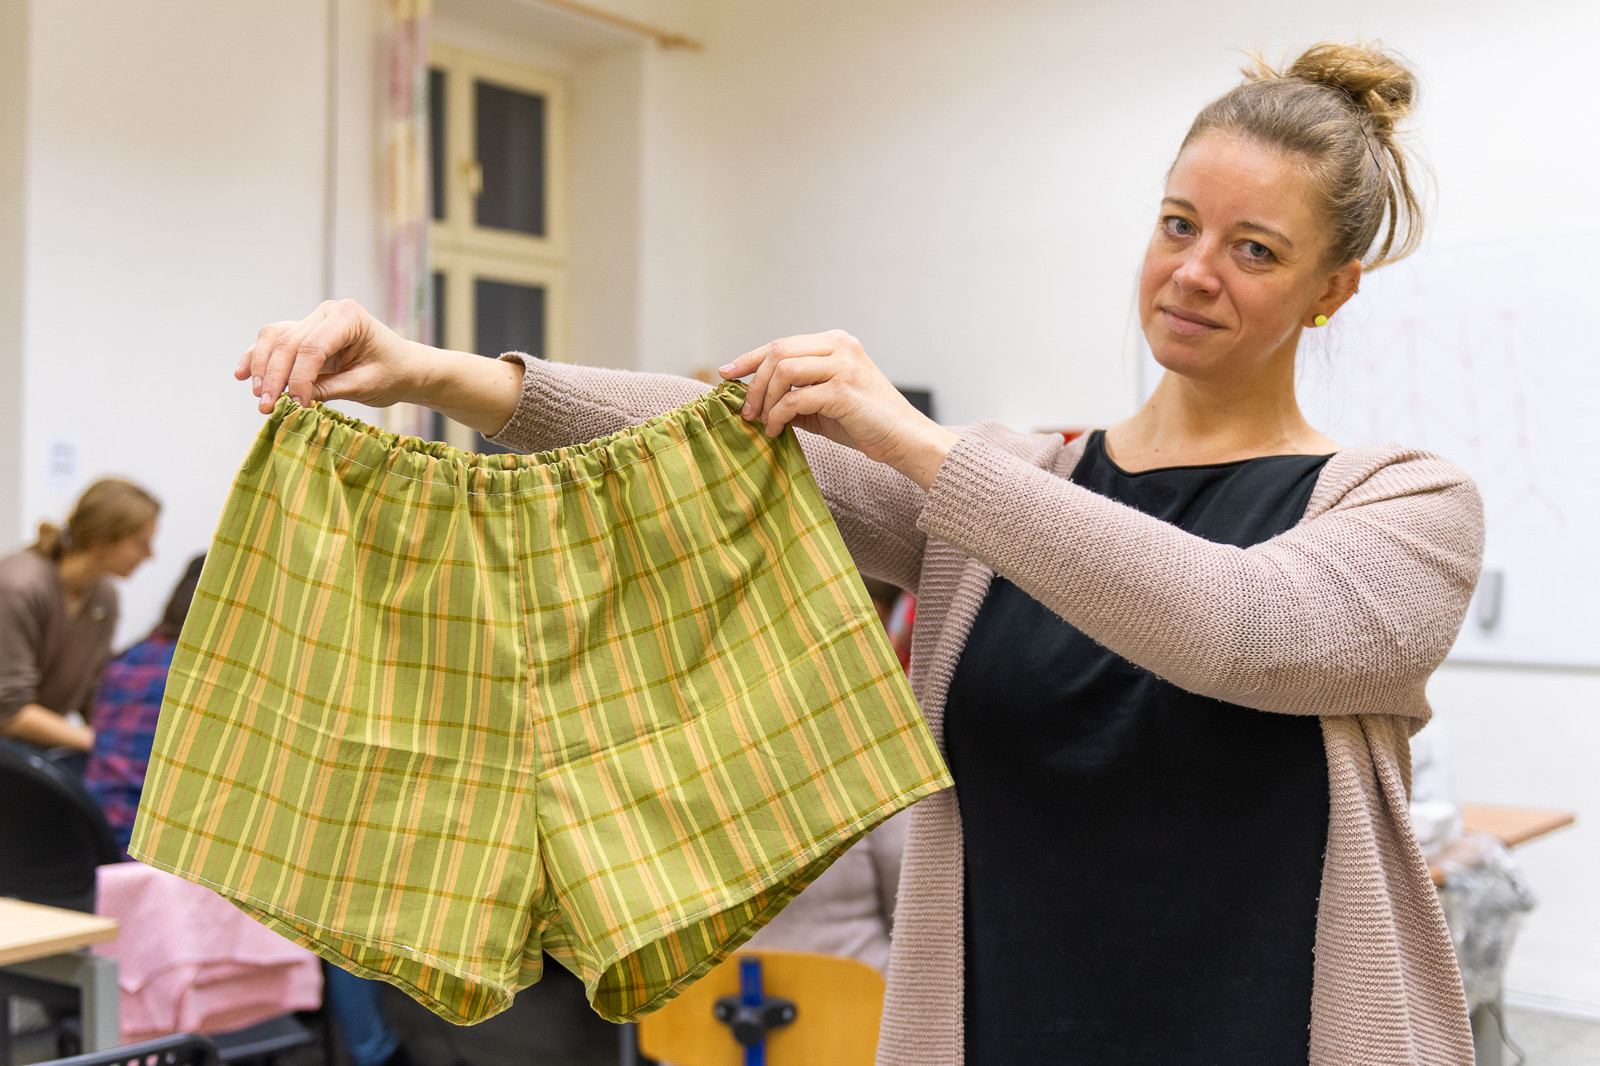 Ženský vzdělávací spolek Vesna navazuje na odkaz brněnské textilní tvorby v duchu udržitelnosti. Naučí vás ušít pánské trenky nebo uháčkovat zero waste stojan na mobil